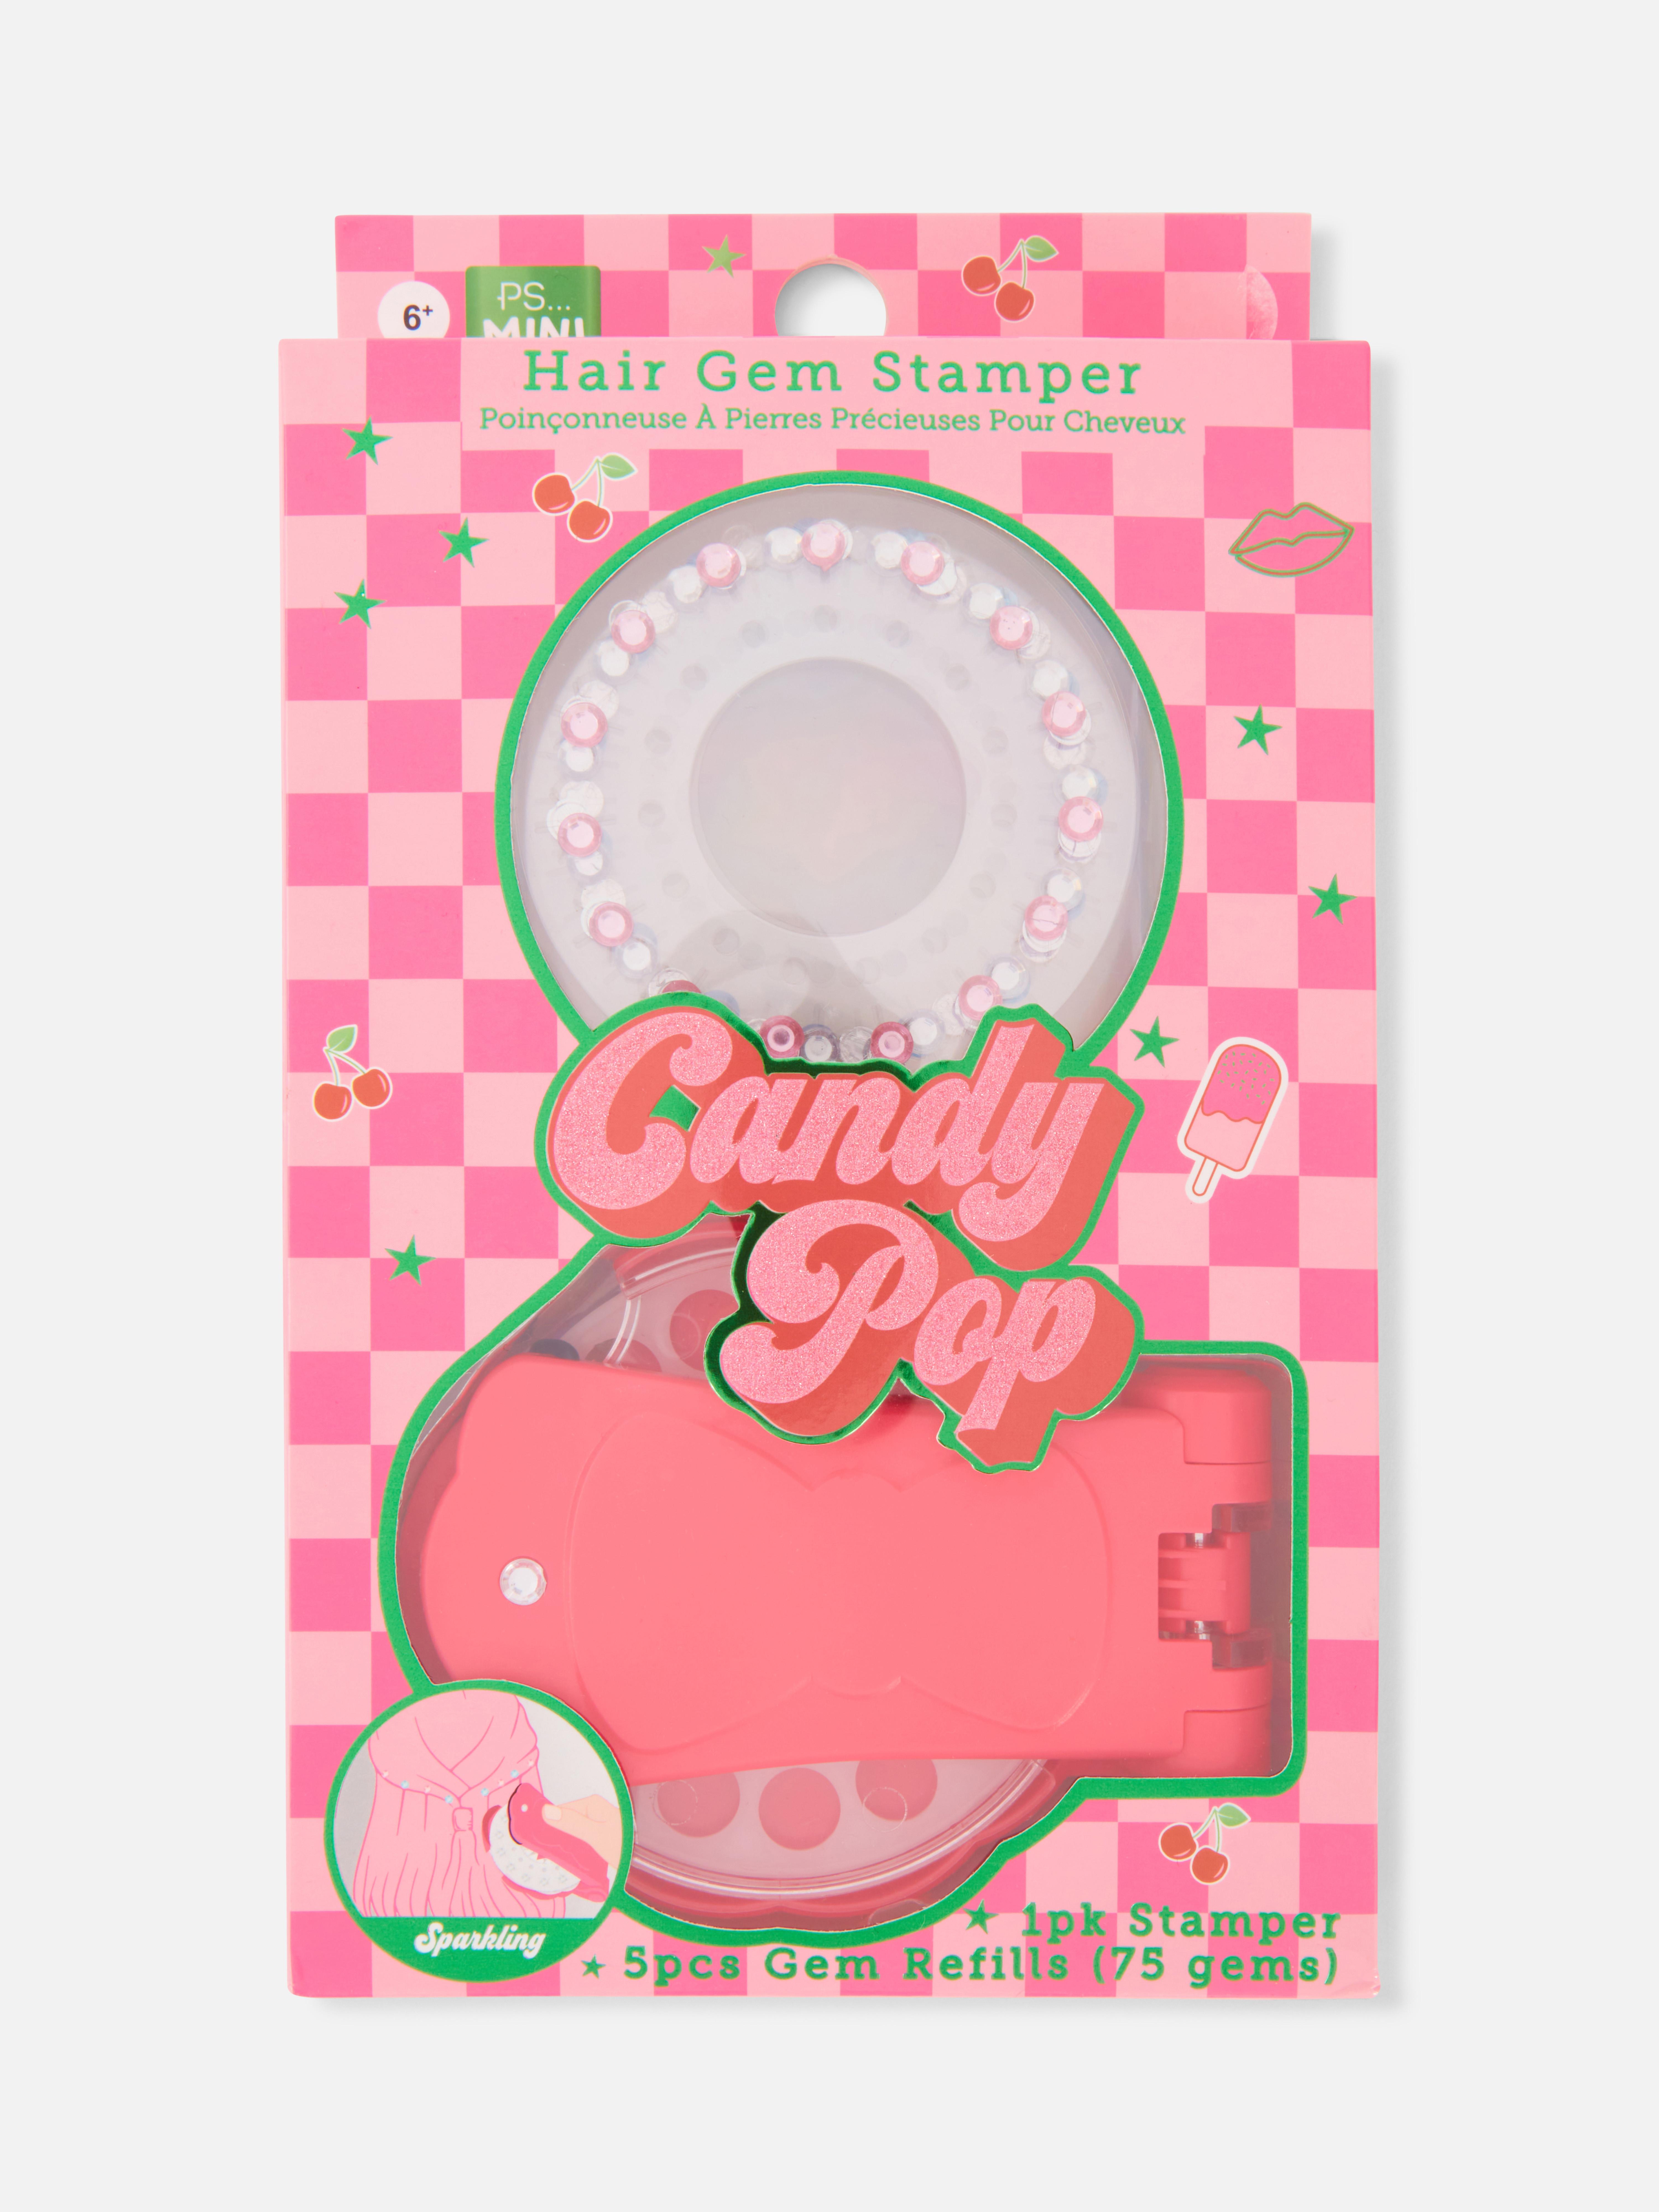 PS… Candy Pop Hair Gem Stamper Set